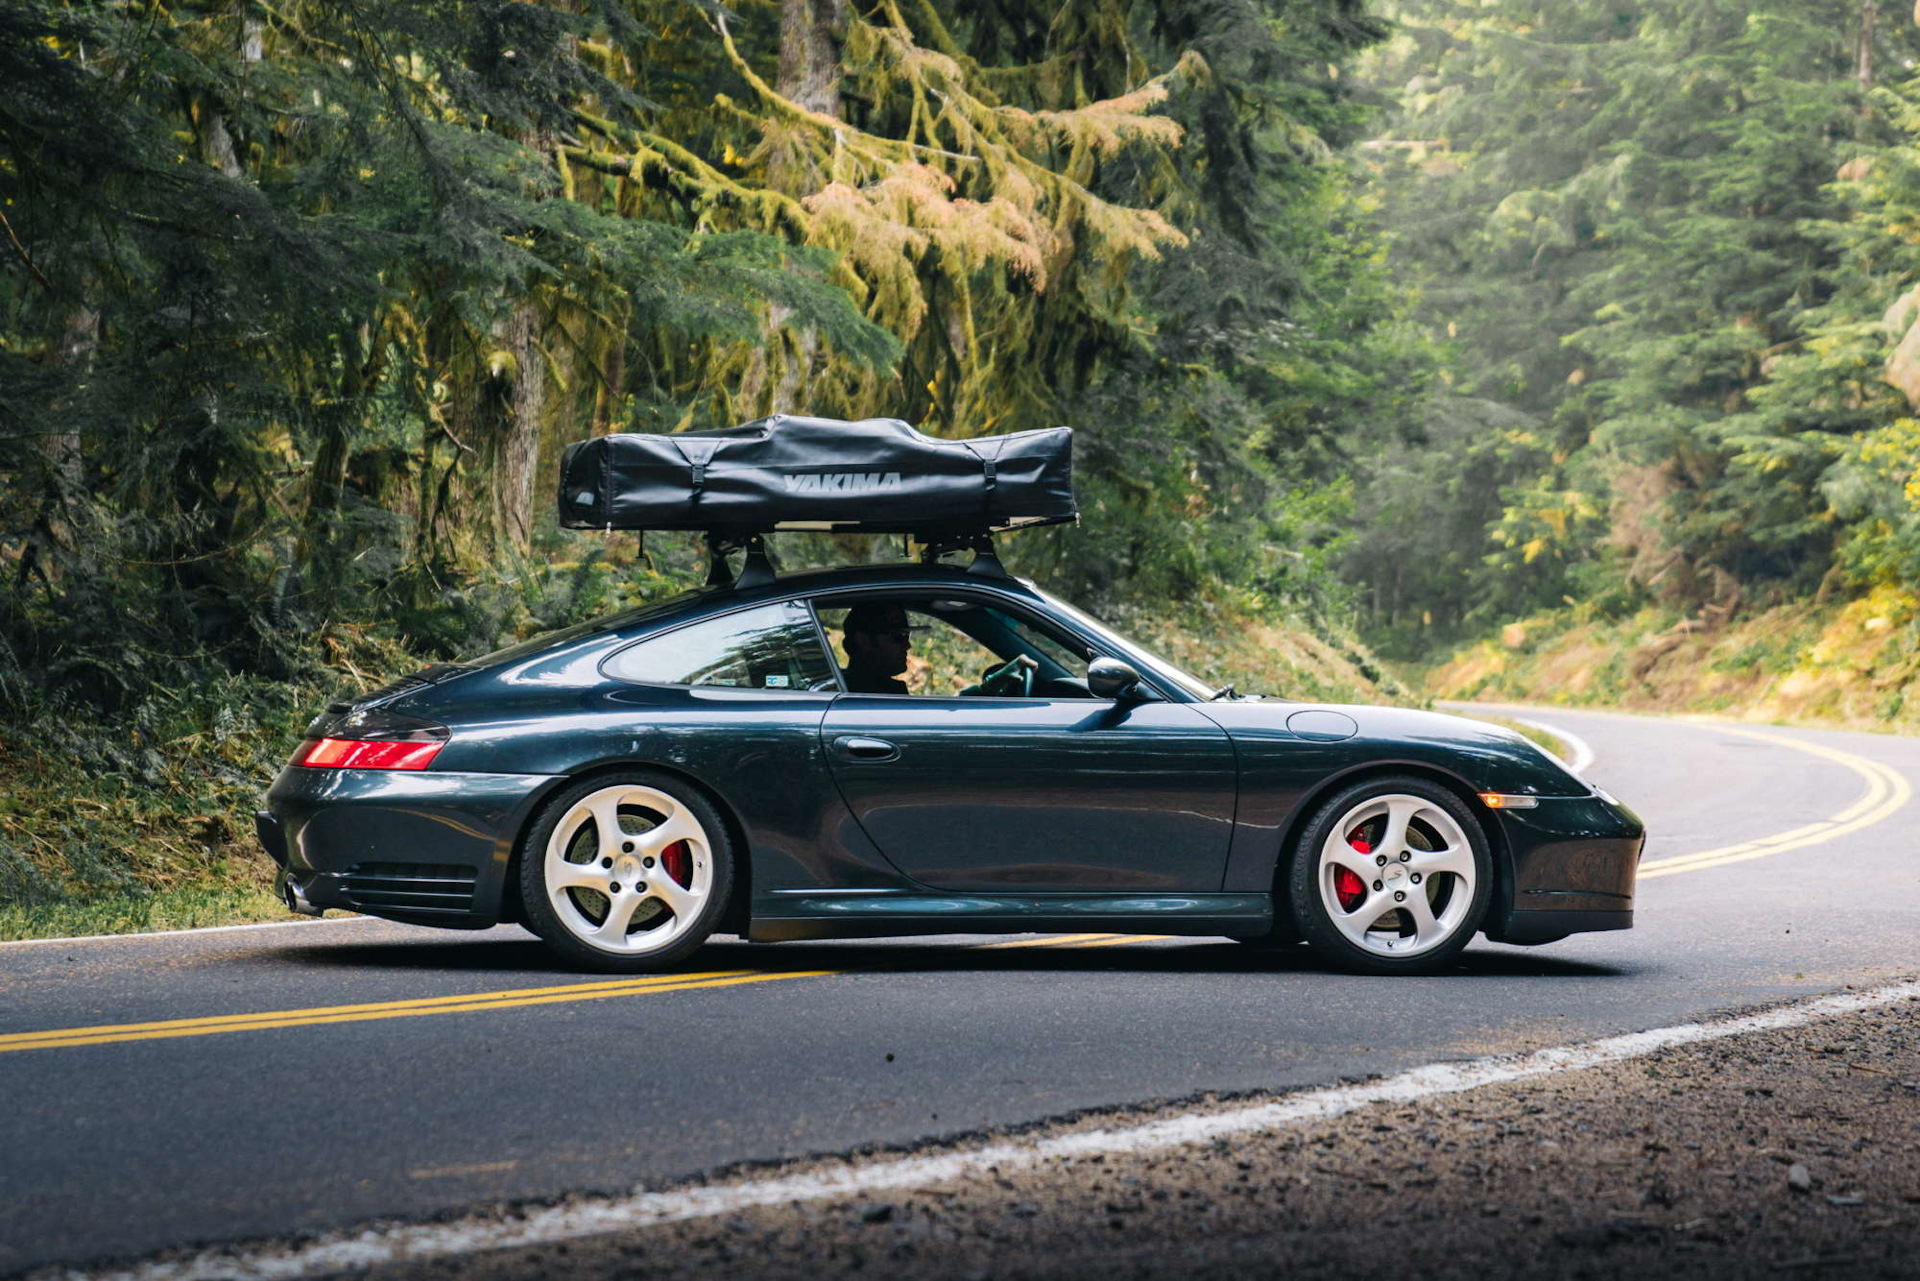 Porsche 911 Ski Rack